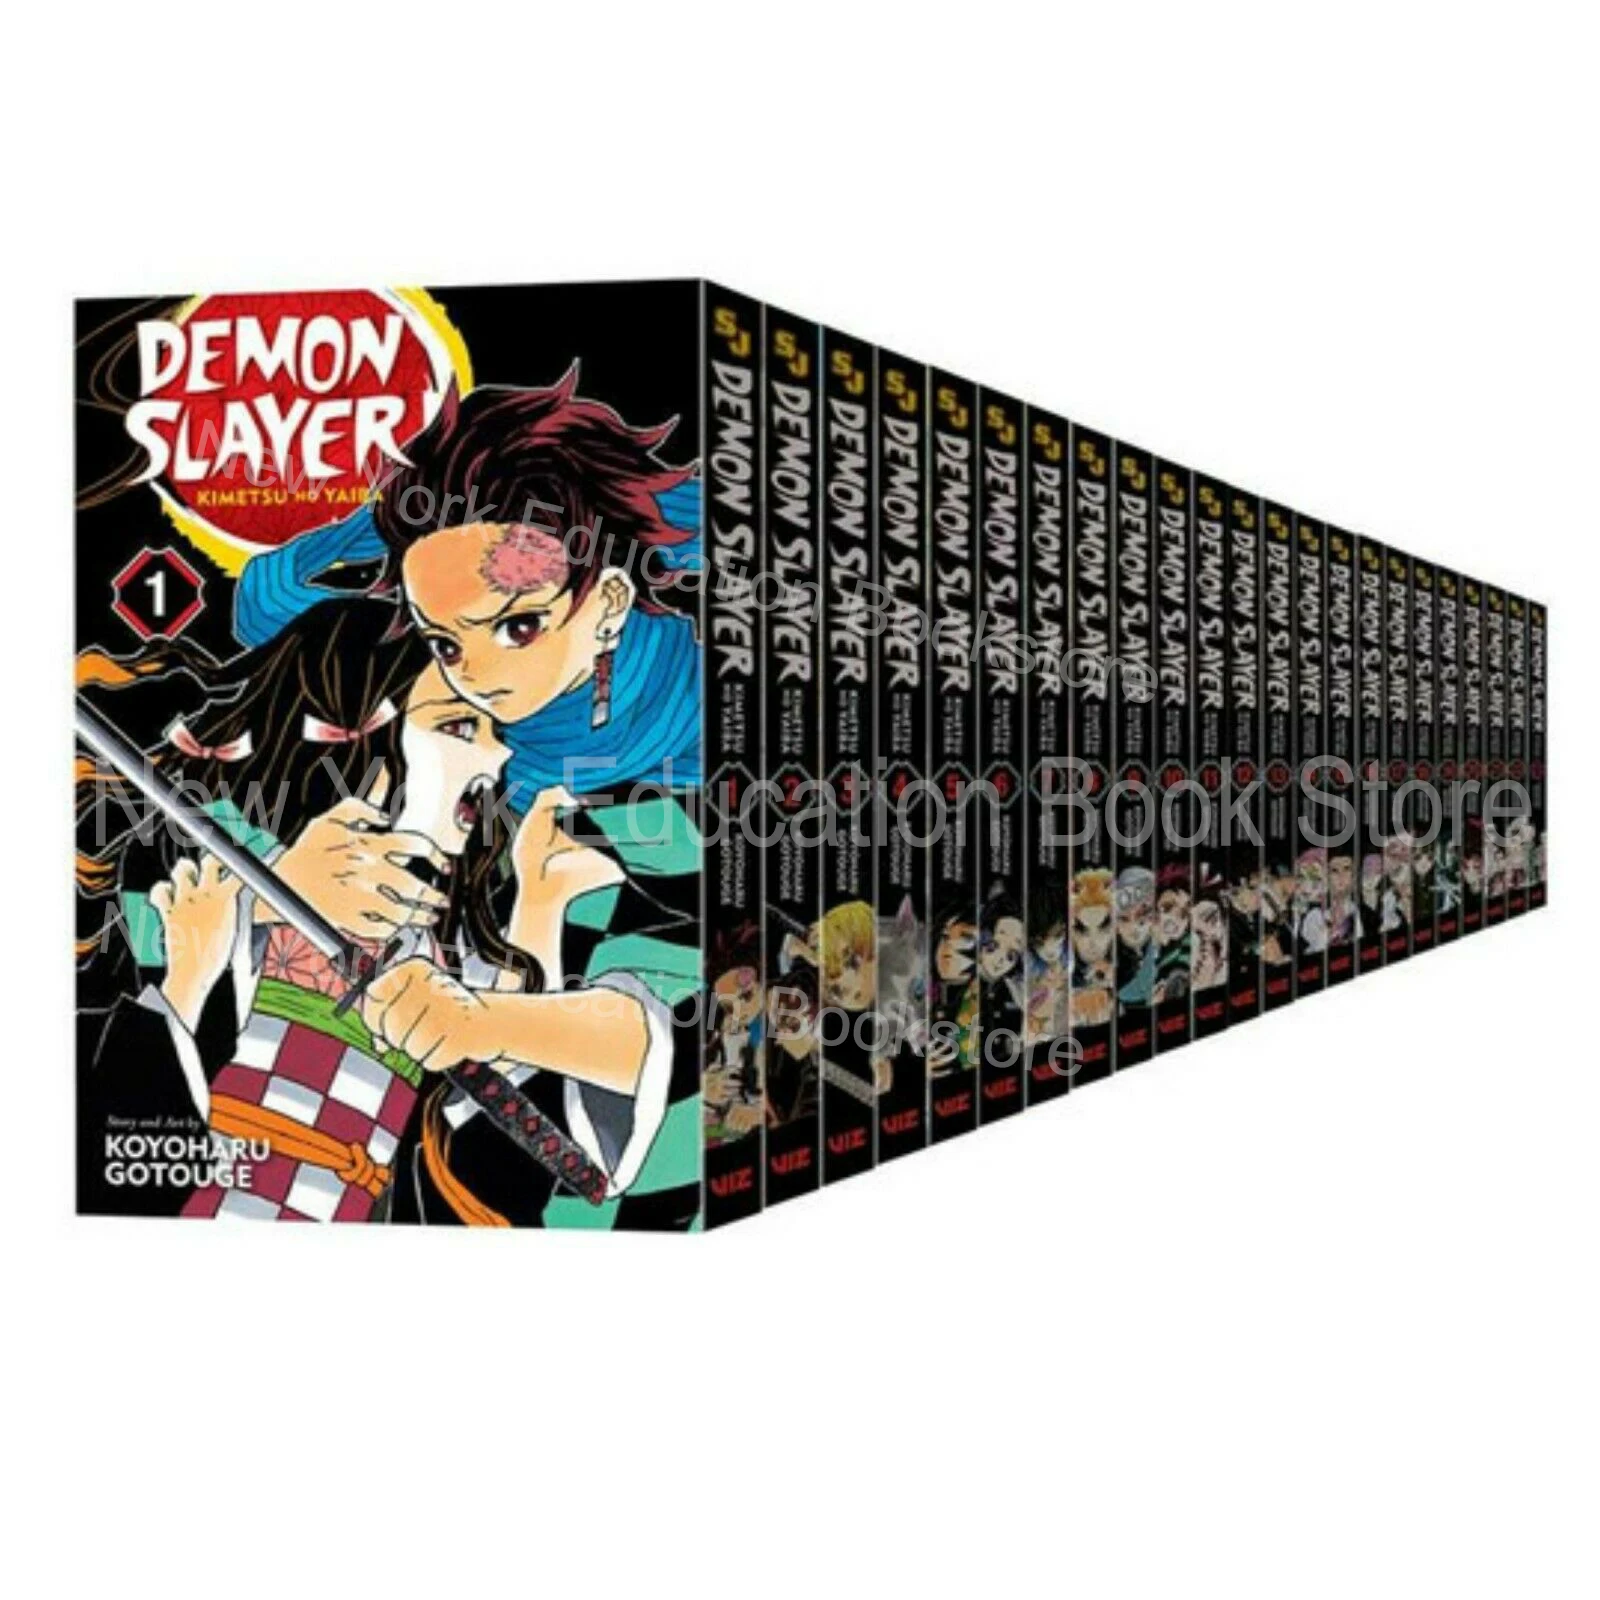 23 Books Anime Demon Slayer Kimetsu No Yaiba Manga Volume 1-23 English Version Comic Book